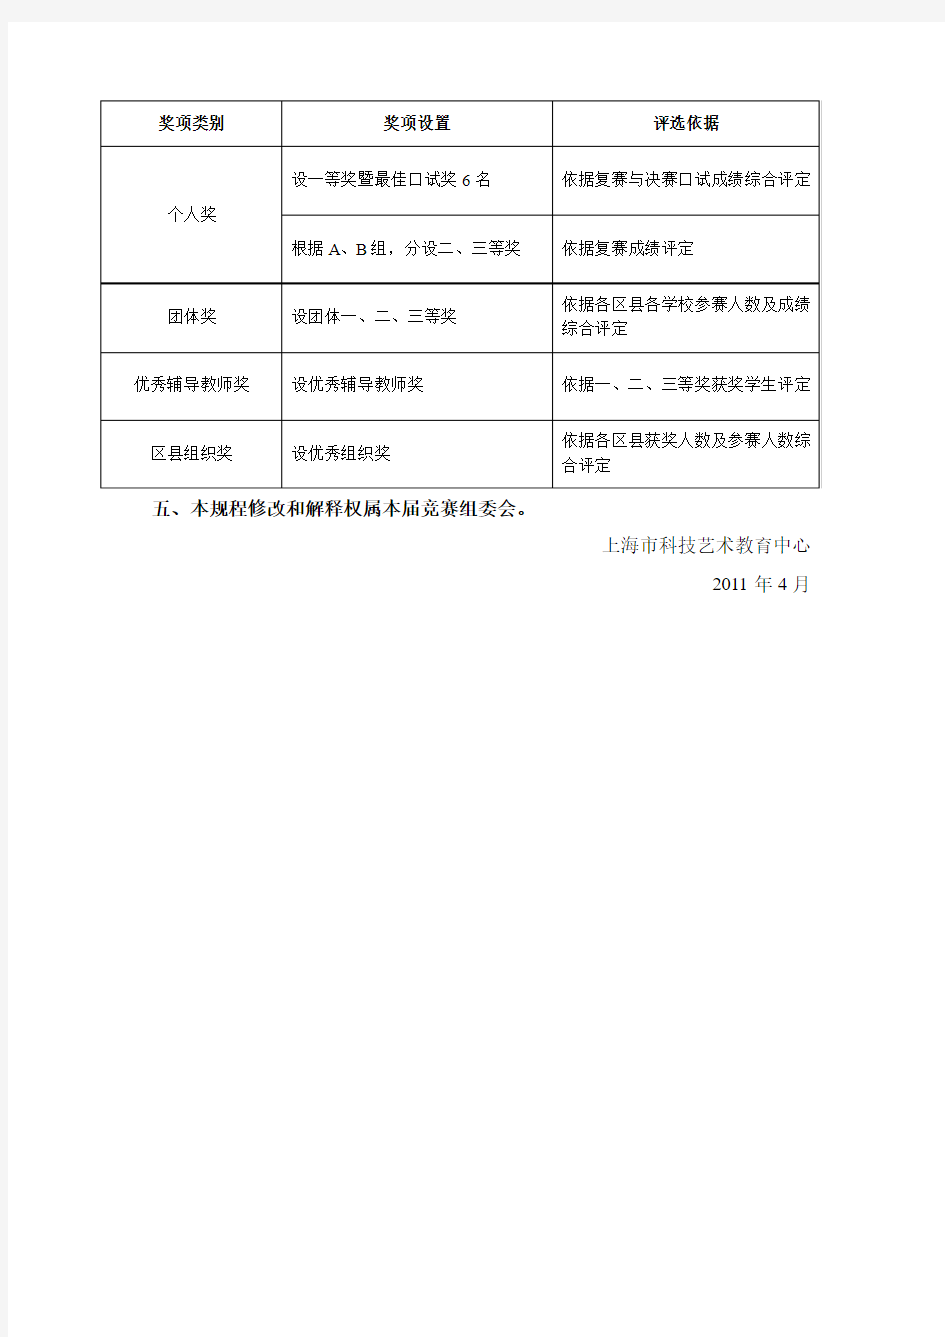 上海市第十九届高中学生科普英语竞赛规程